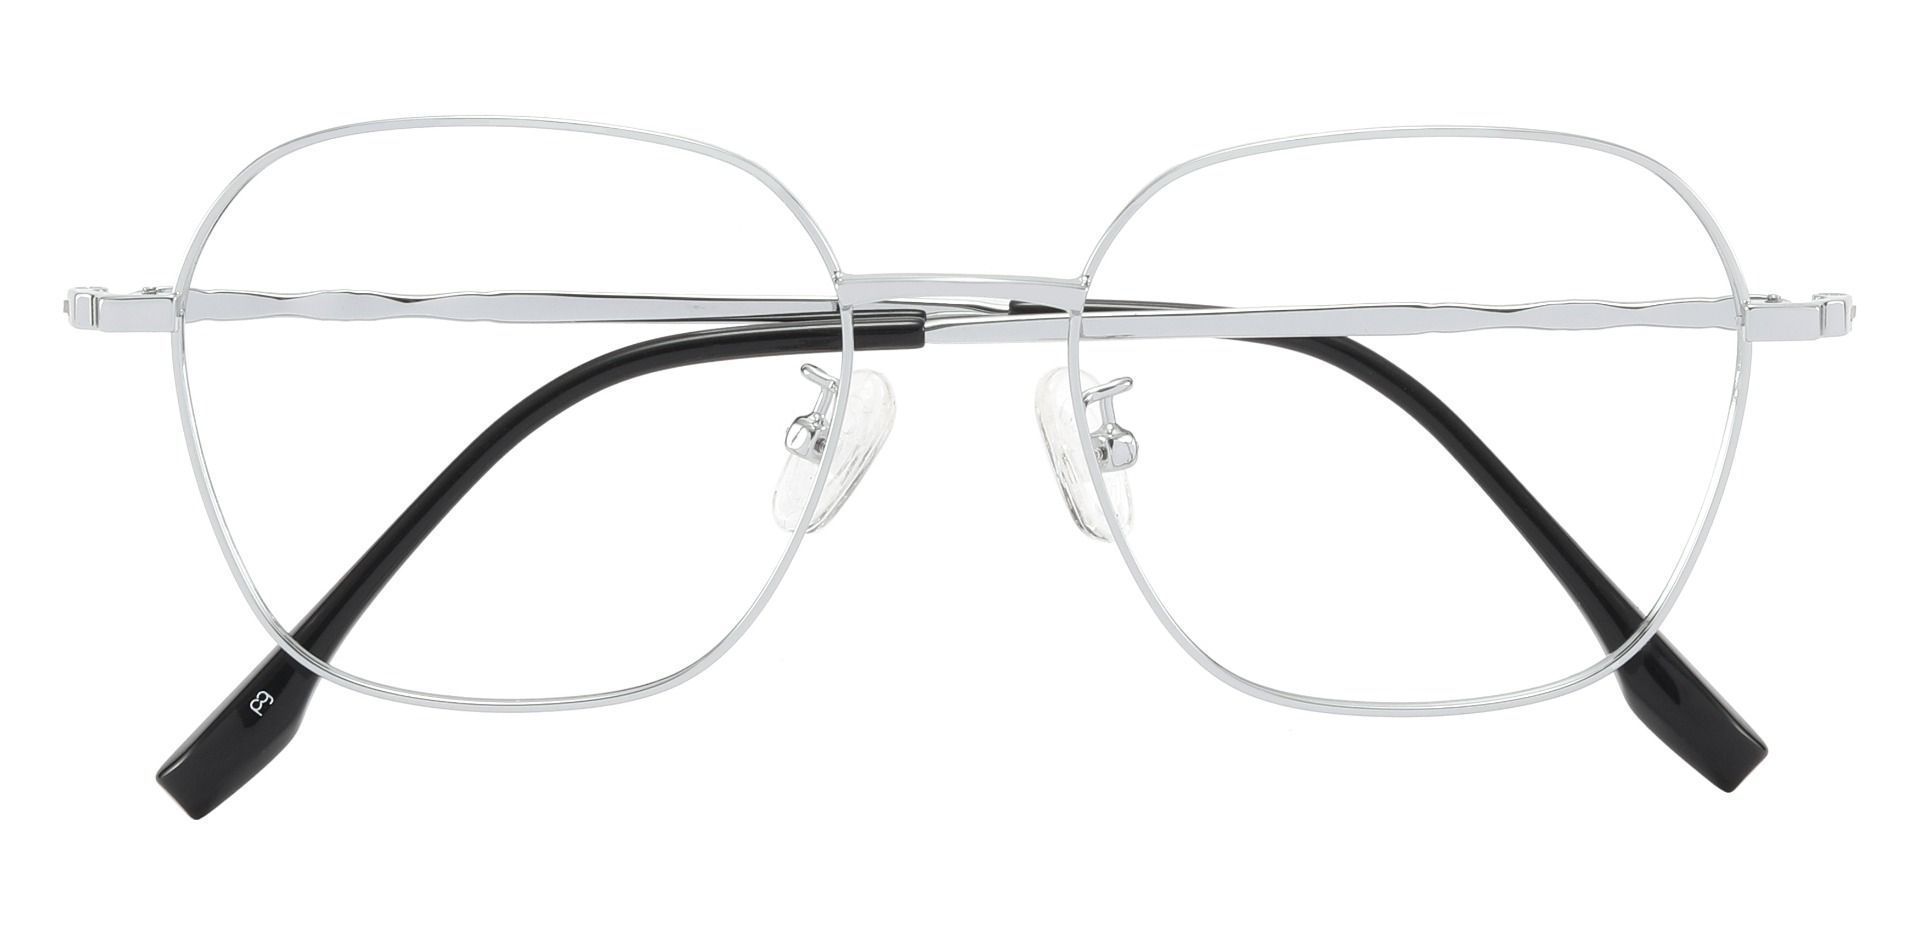 Crest Geometric Prescription Glasses - Silver